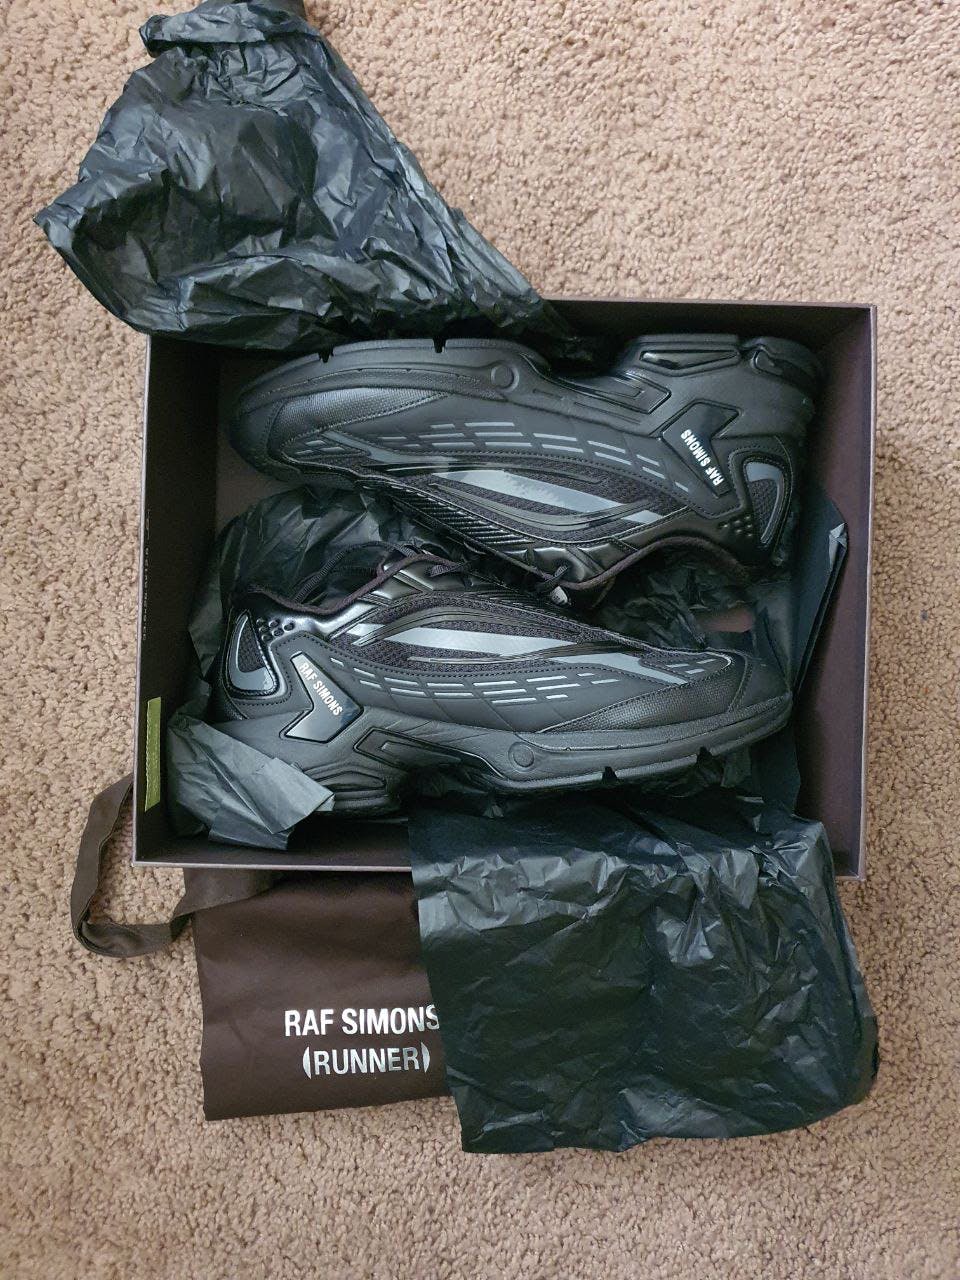 Raf Simons (Runner) Ultrasceptre Sneakers - 1